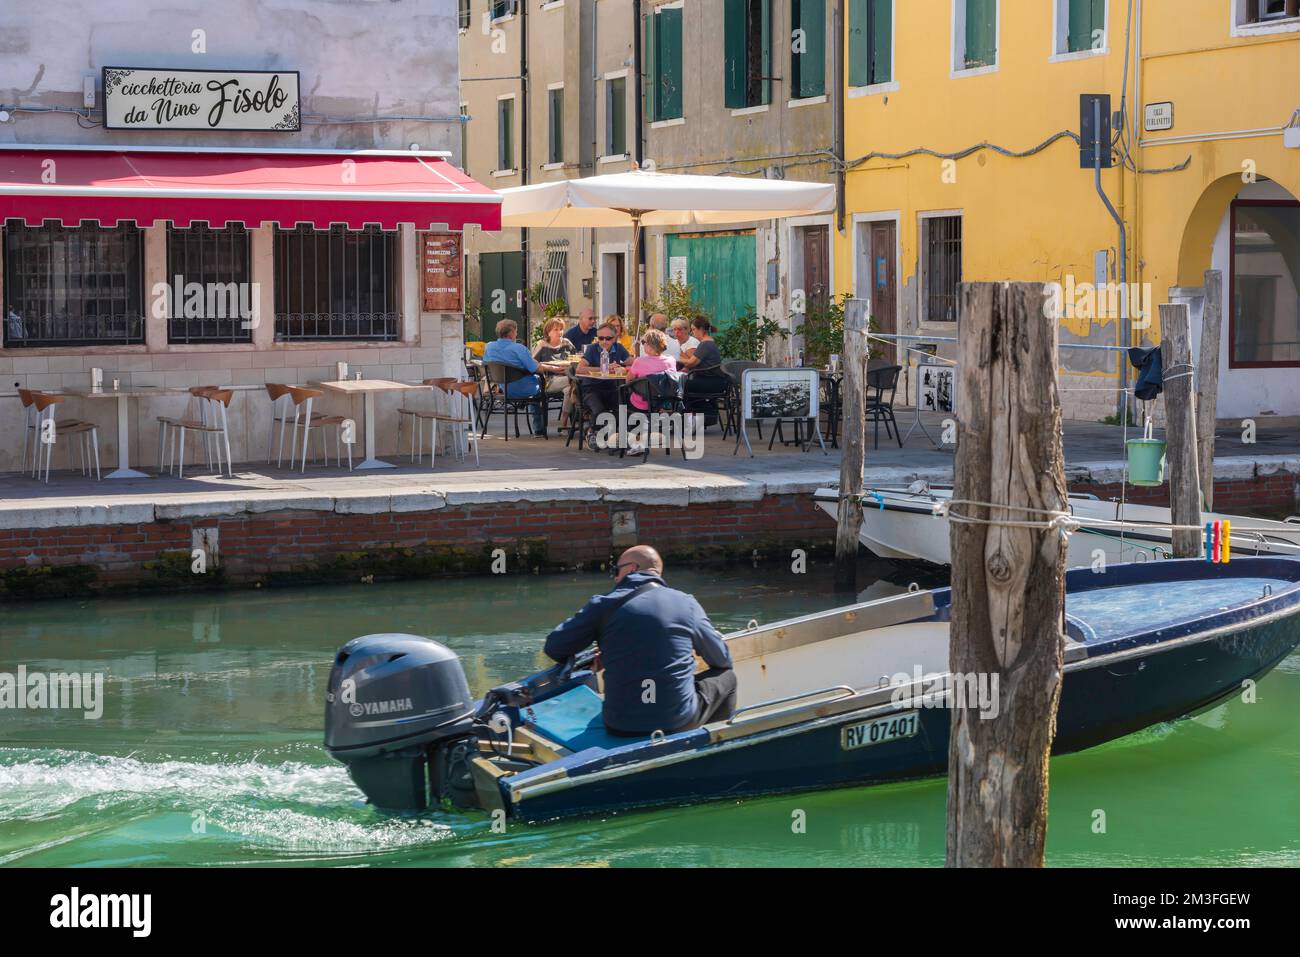 Ristorante canale Italia, vista in estate di un gruppo di persone che cenano in una terrazza ristorante accanto al canale vena a Chioggia, comune di Venezia, Italia Foto Stock